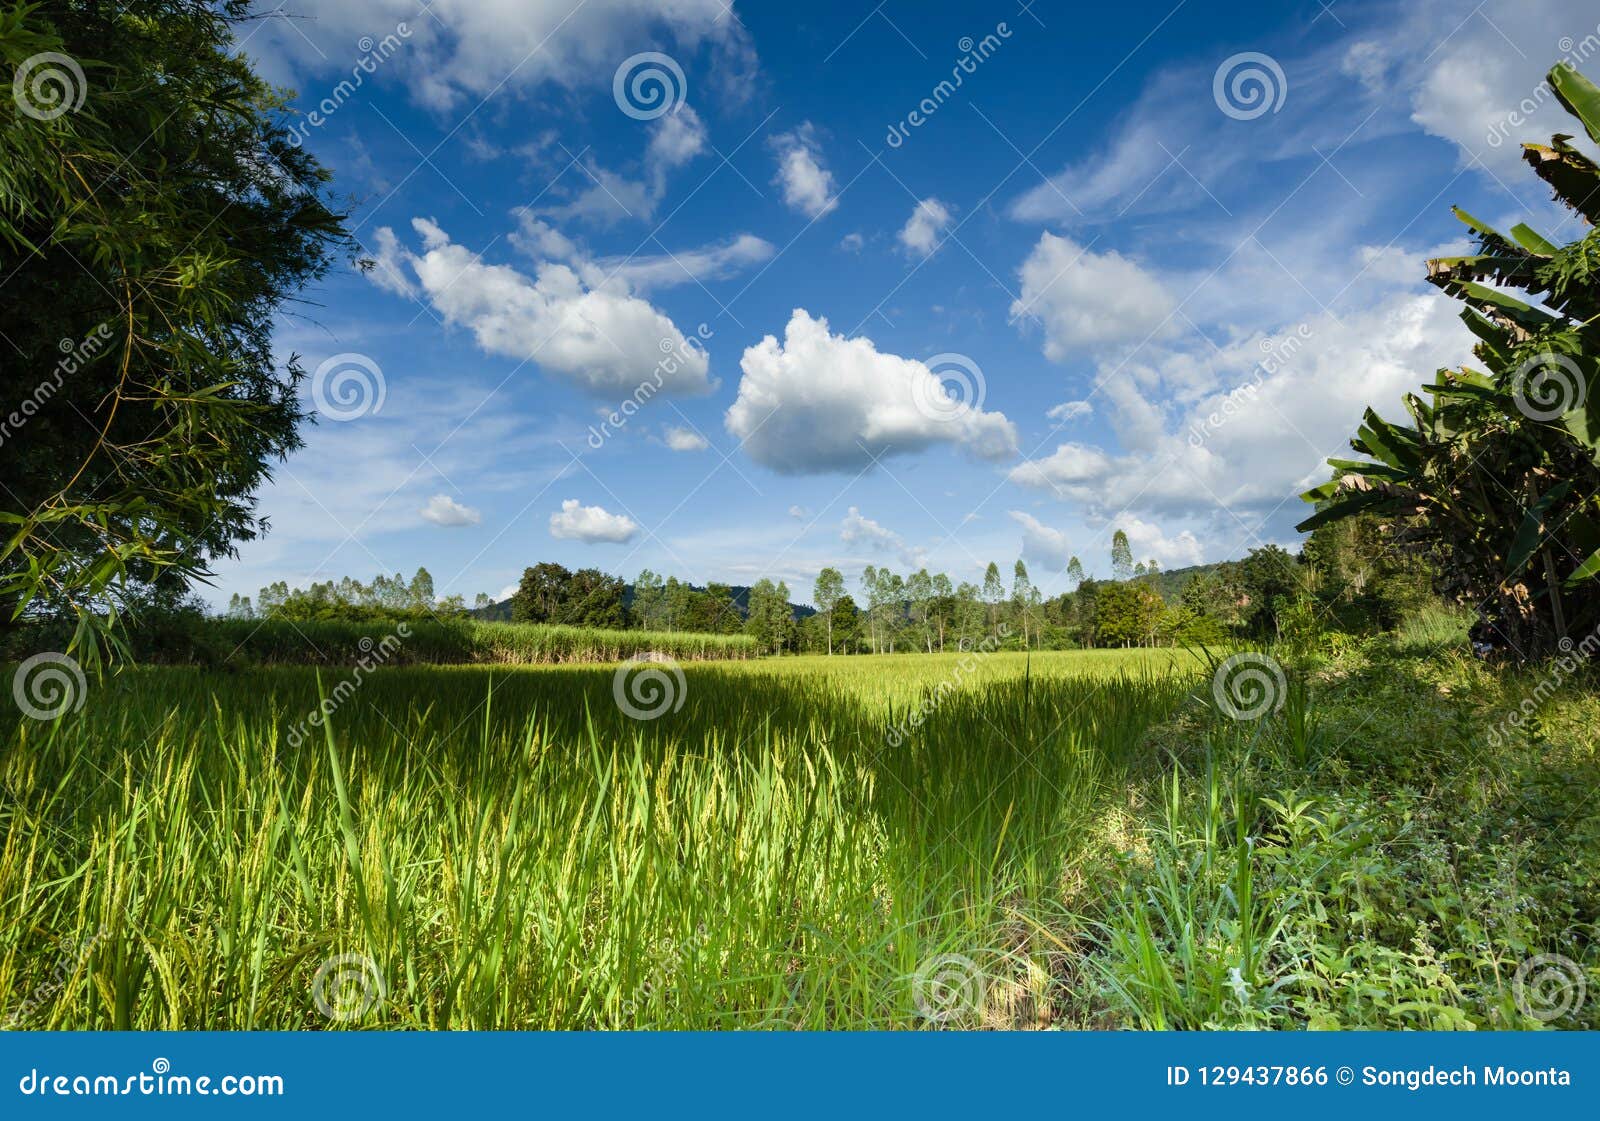 agricultural plots landscape